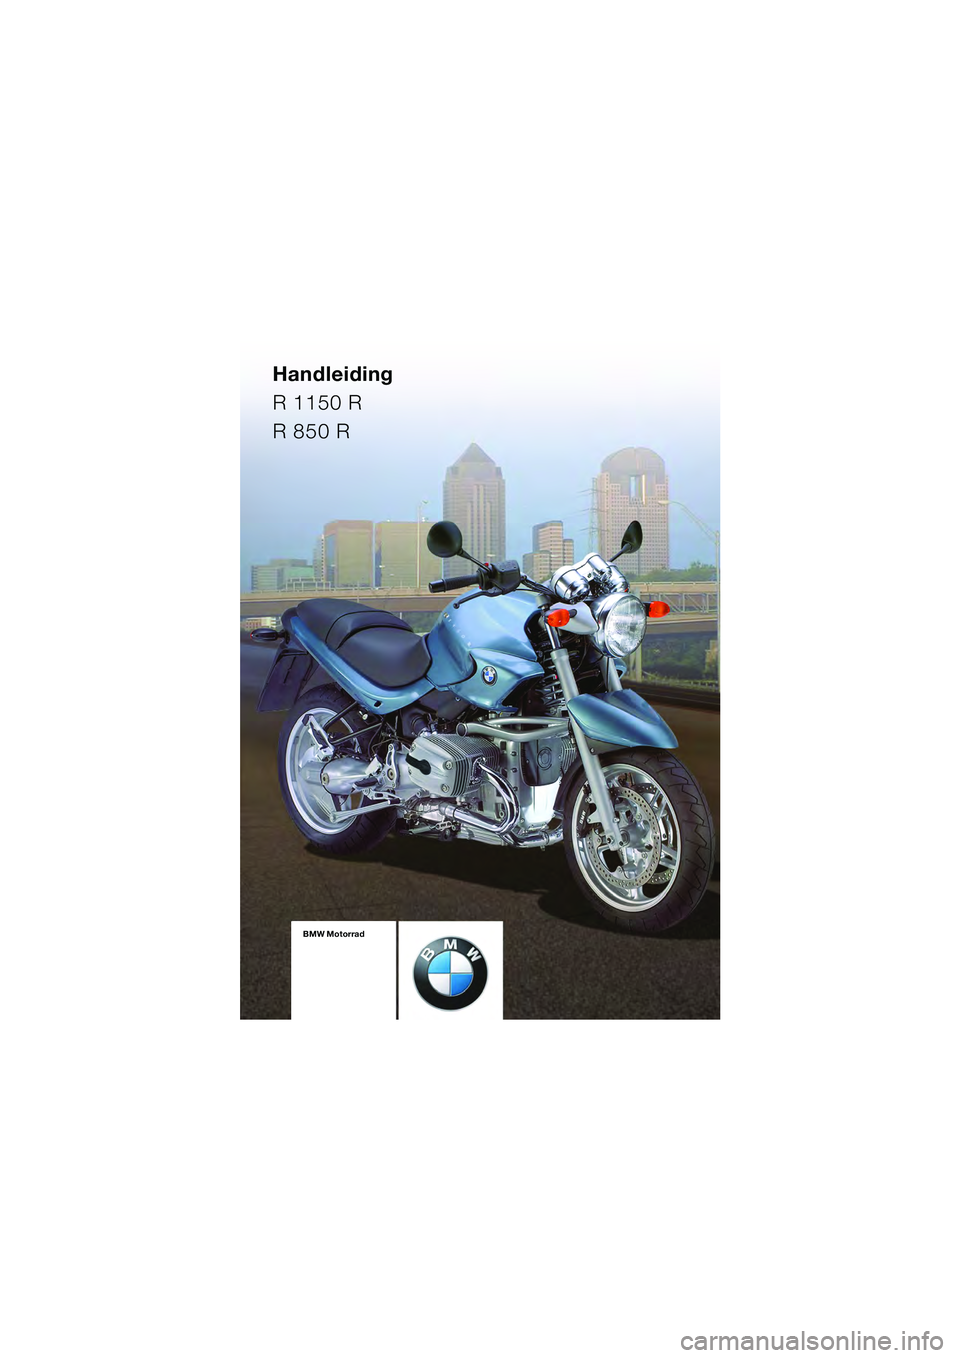 BMW MOTORRAD R 850 R 2004  Handleiding (in Dutch) Handleiding
R 1150 R
R 850 R
BMW Motorrad
Boordliteratuur
bestaande uit:  
Handleiding  
en Onderhouds- 
handleidingBMW Motorrad
Boordliteratuur
bestaande uit:  
Handleiding  
en Onderhouds- 
handleid